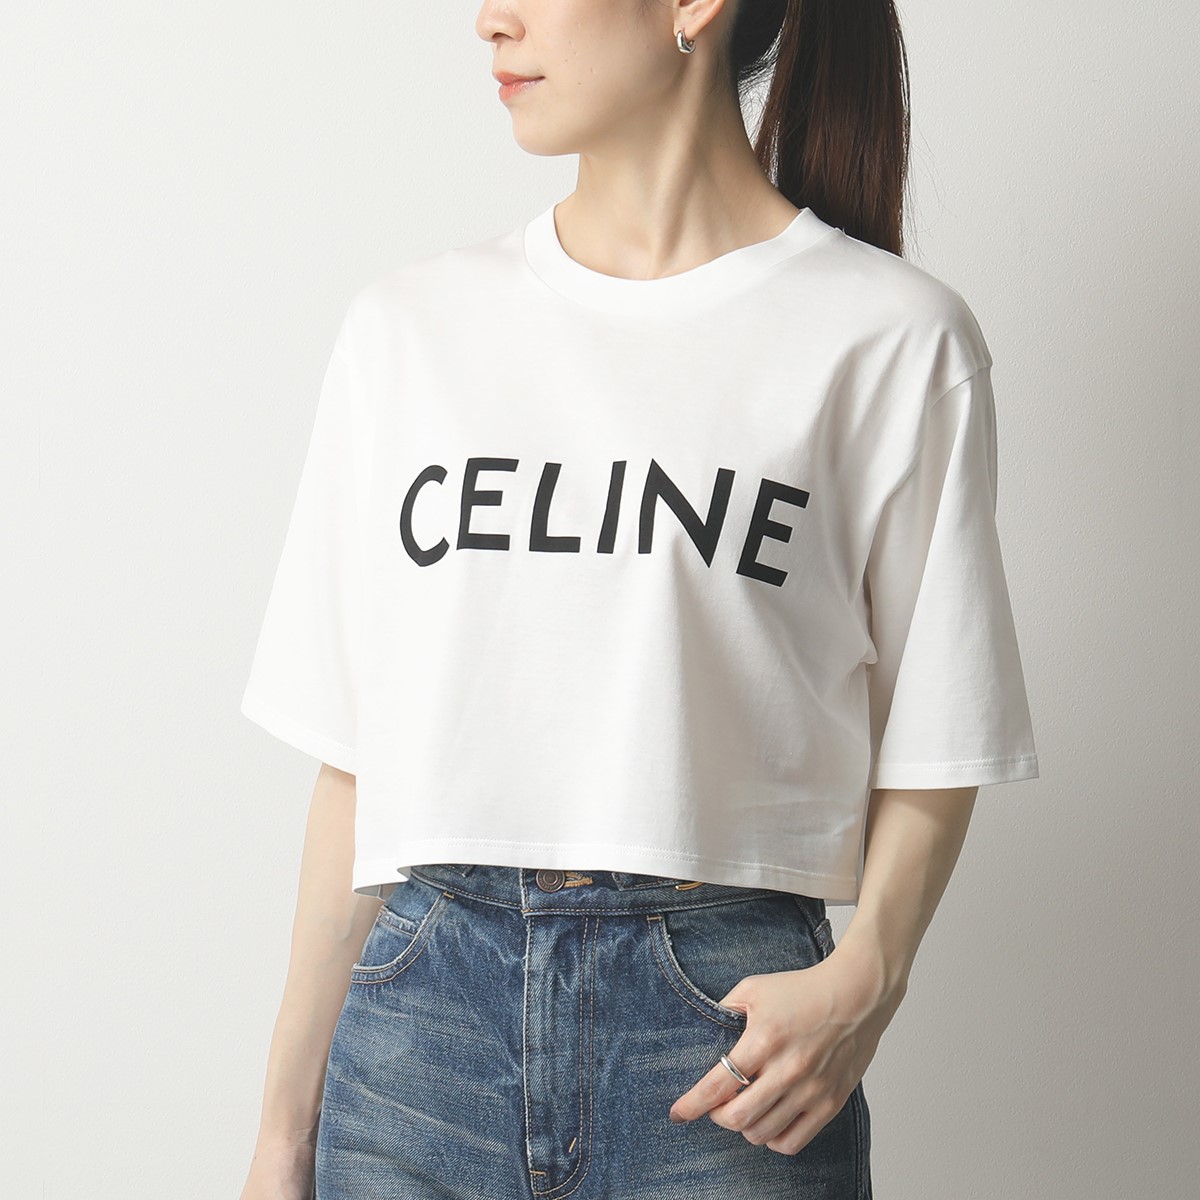 CELINE セリーヌ 2X761501F.01EA クロップド Tシャツ コットンジャージー 半袖 カットソー クルーネック ロゴT レディース |  インポートセレクト musee